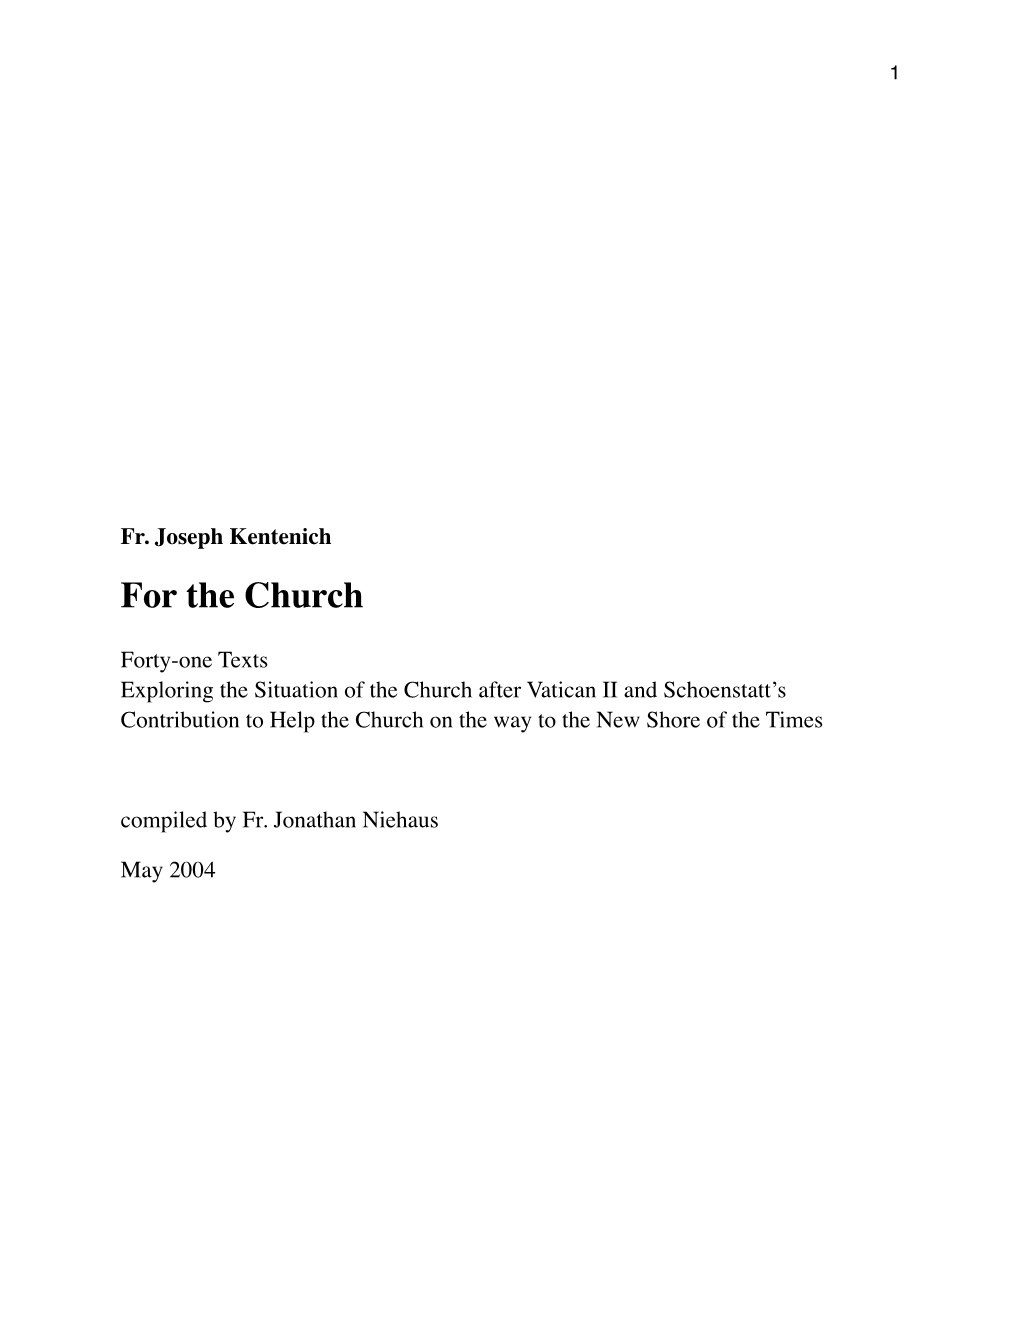 Fr. Joseph Kentenich for the Church